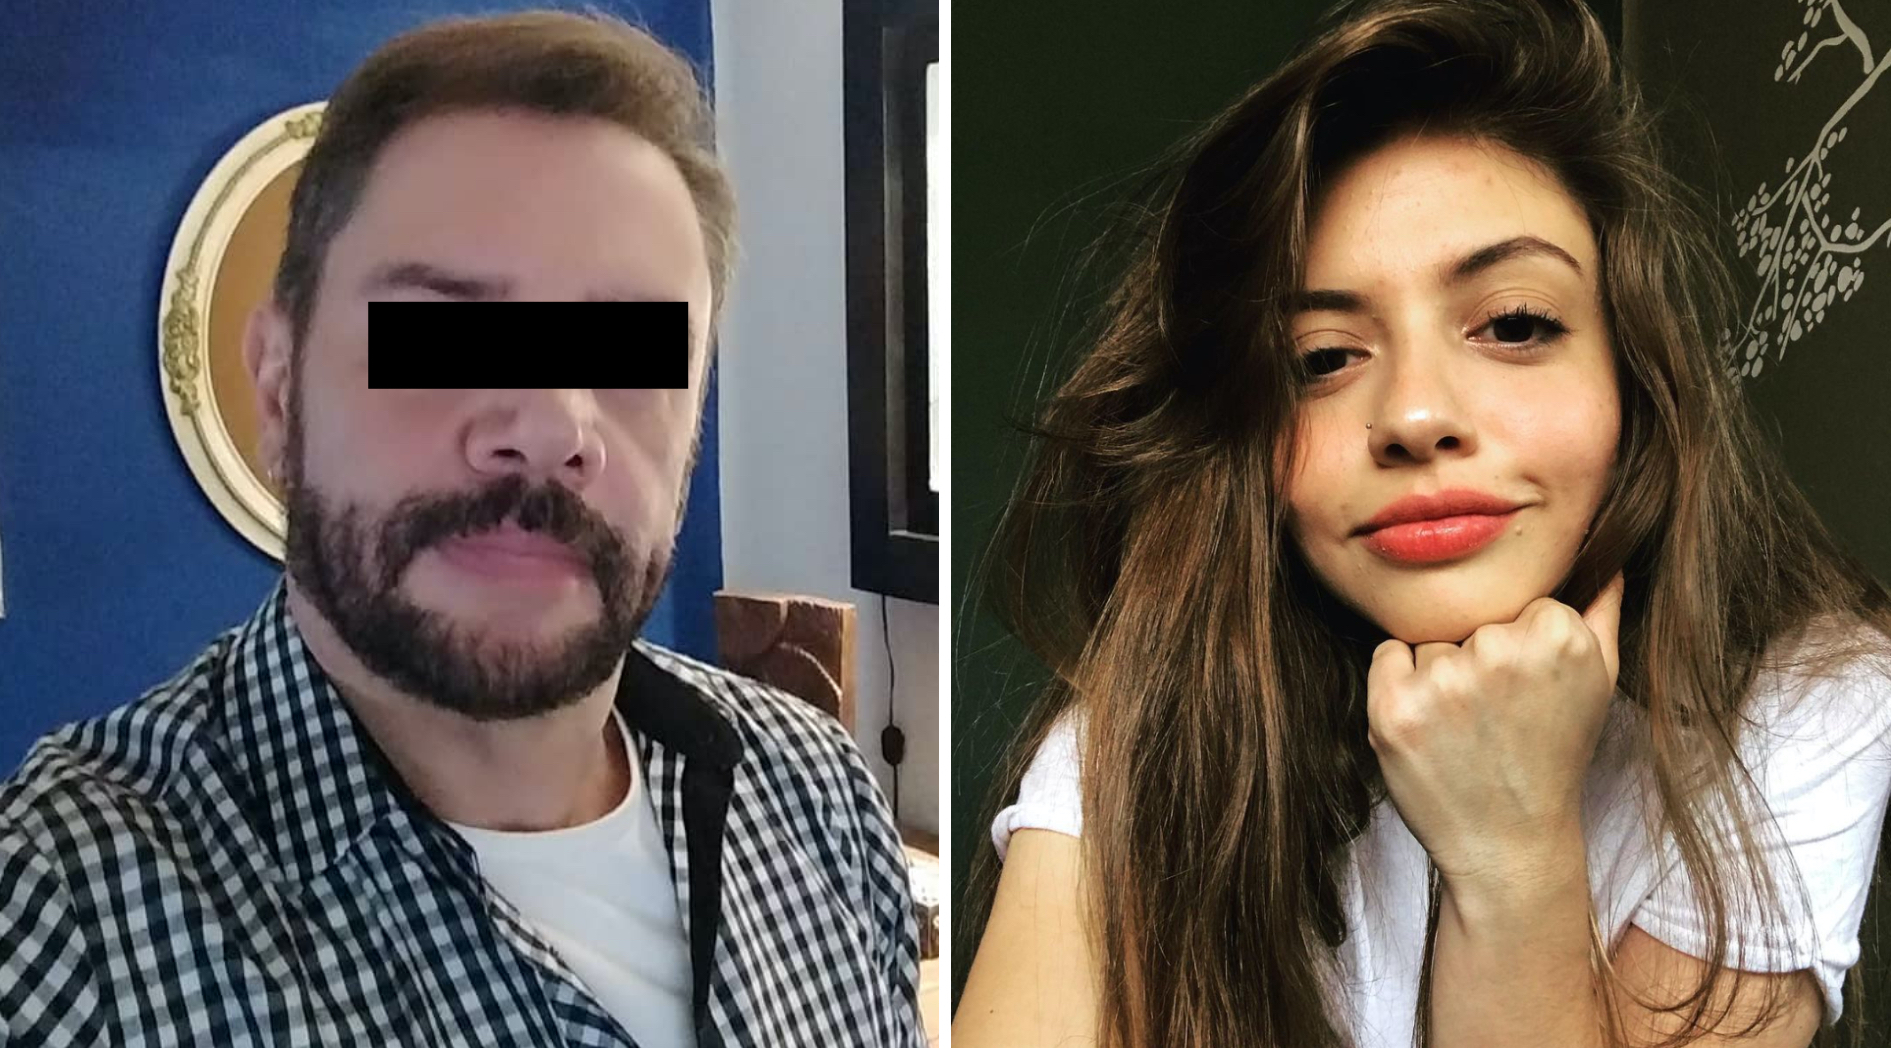 La figlia di Hector Parra ha rivelato di assumere antidepressivi dopo l'arresto di suo padre per presunti abusi sessuali